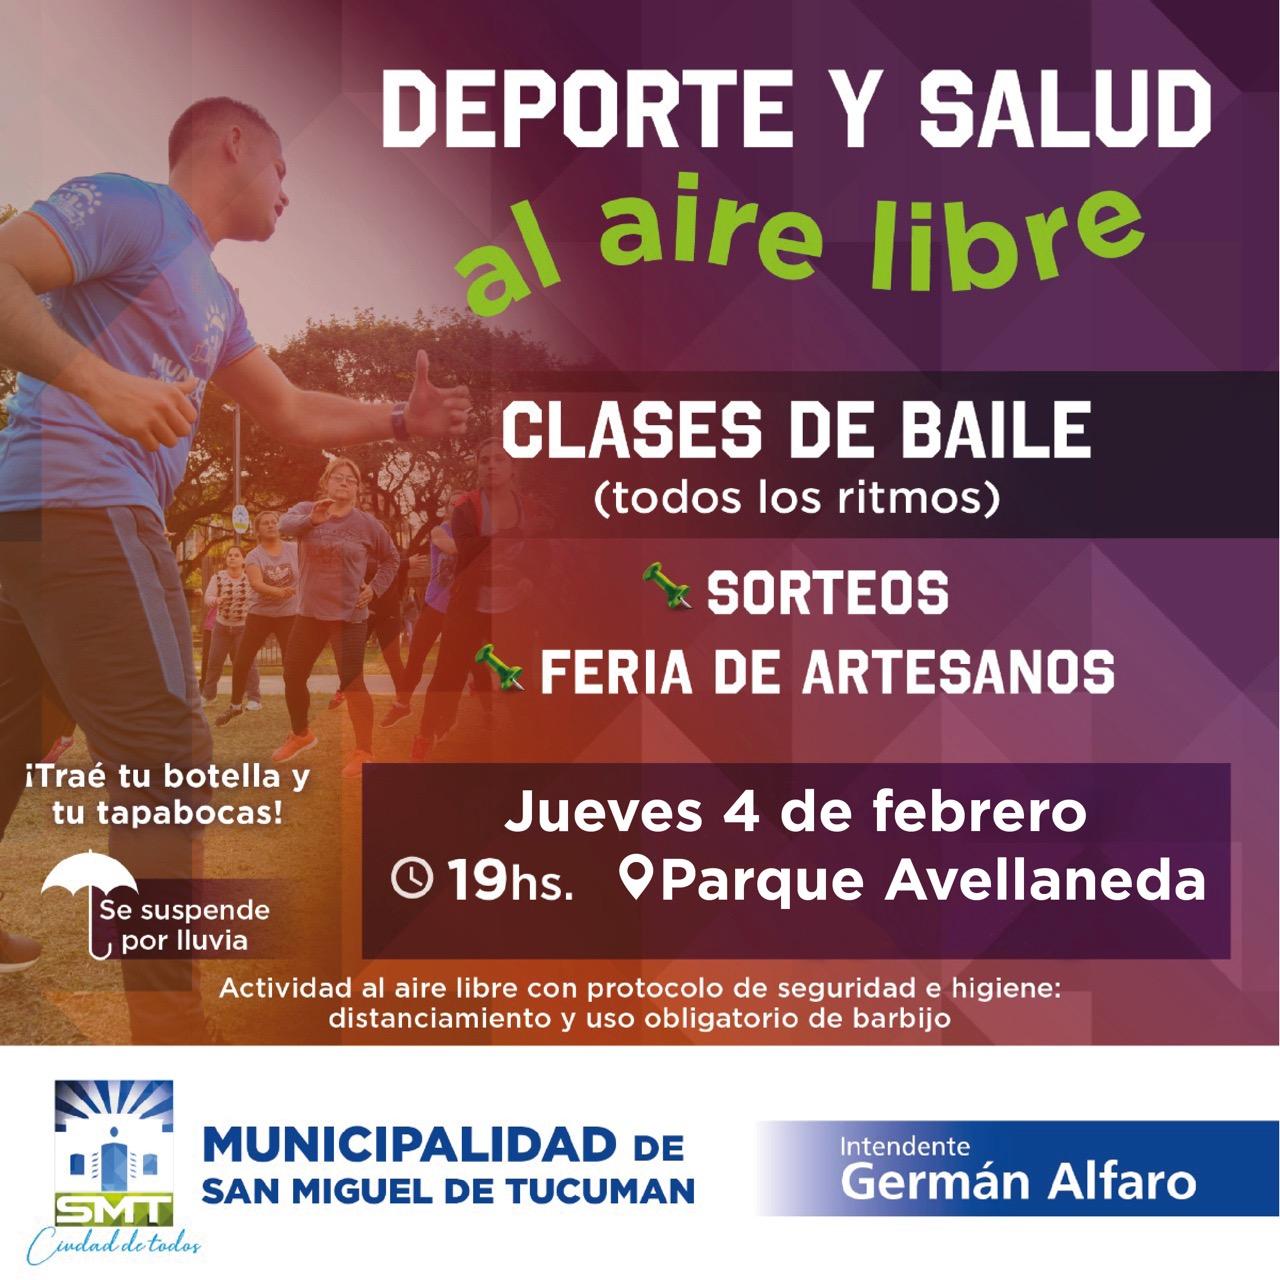 Invitan a participar de una jornada de Deporte y Salud en el parque Avellaneda 